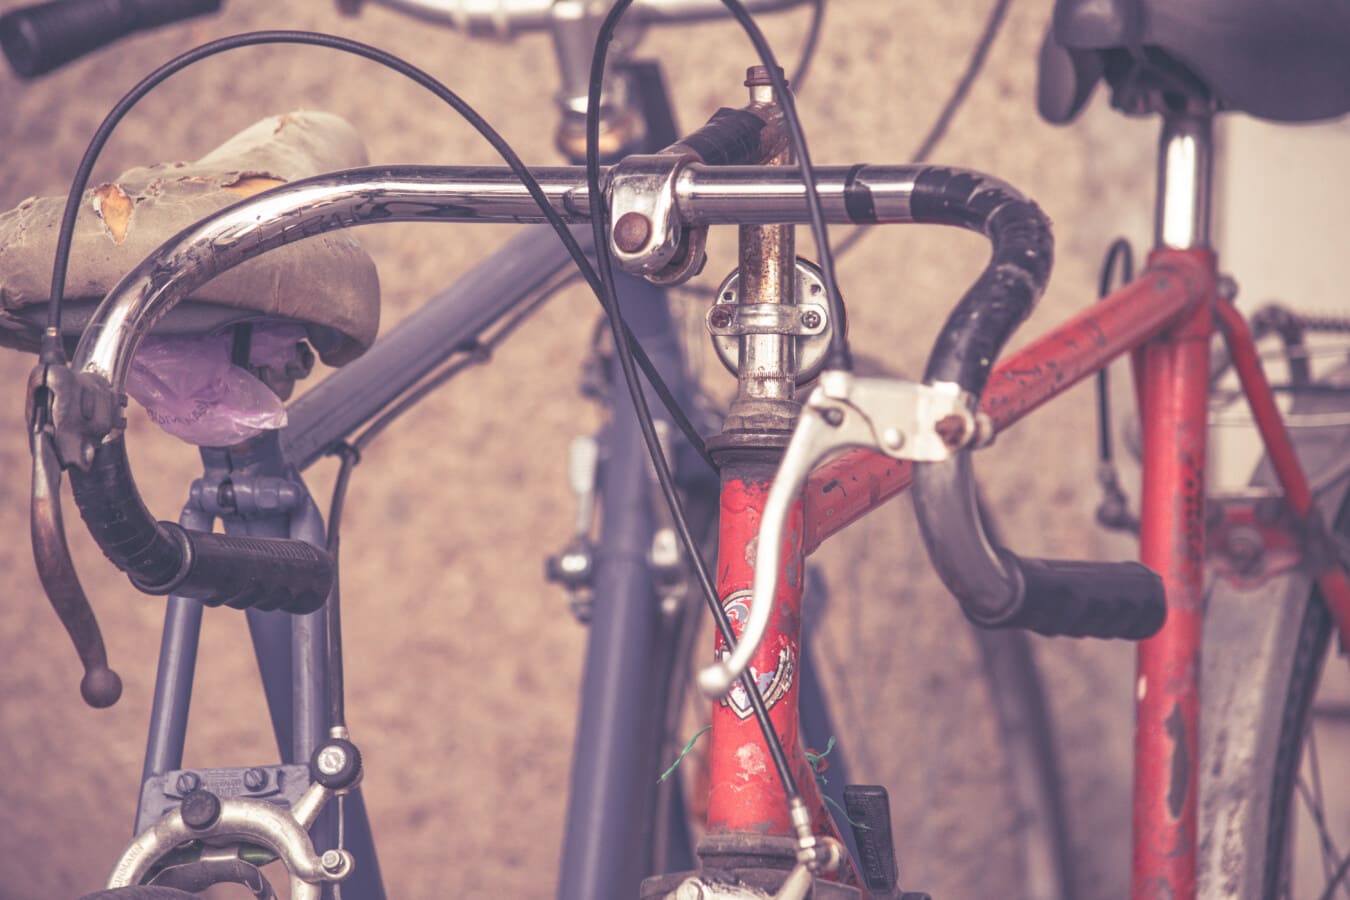 xe đạp, phong cách cũ, đua xe, Ban chỉ đạo wheel, cuộc hái nho, bánh xe, xe đạp, hoài niệm, cũ, cổ điển